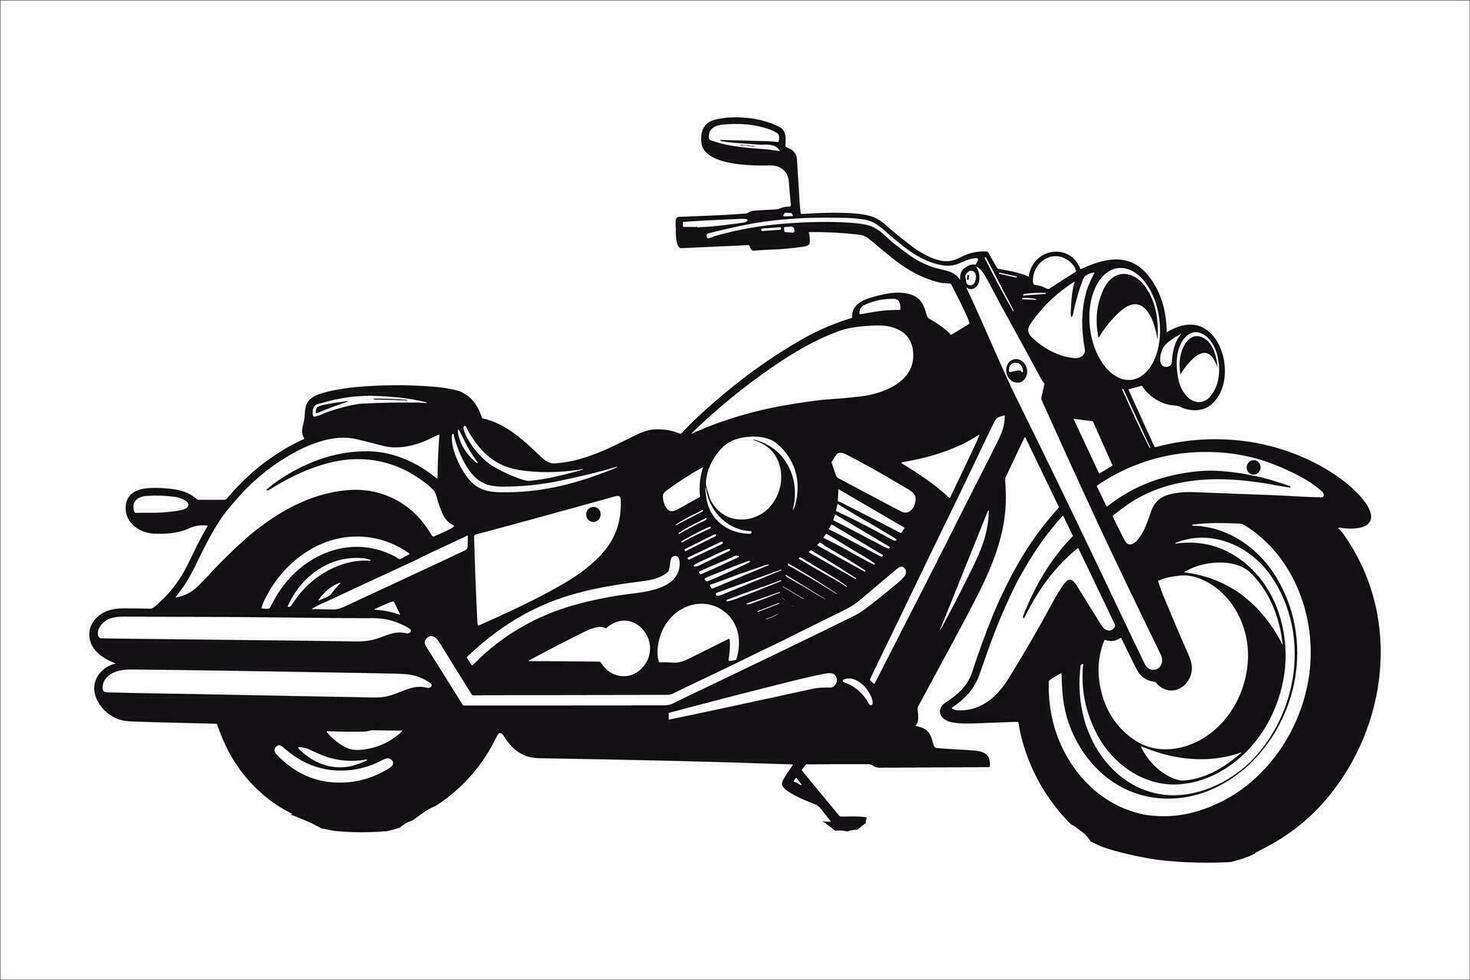 motocicleta y Superbike vector